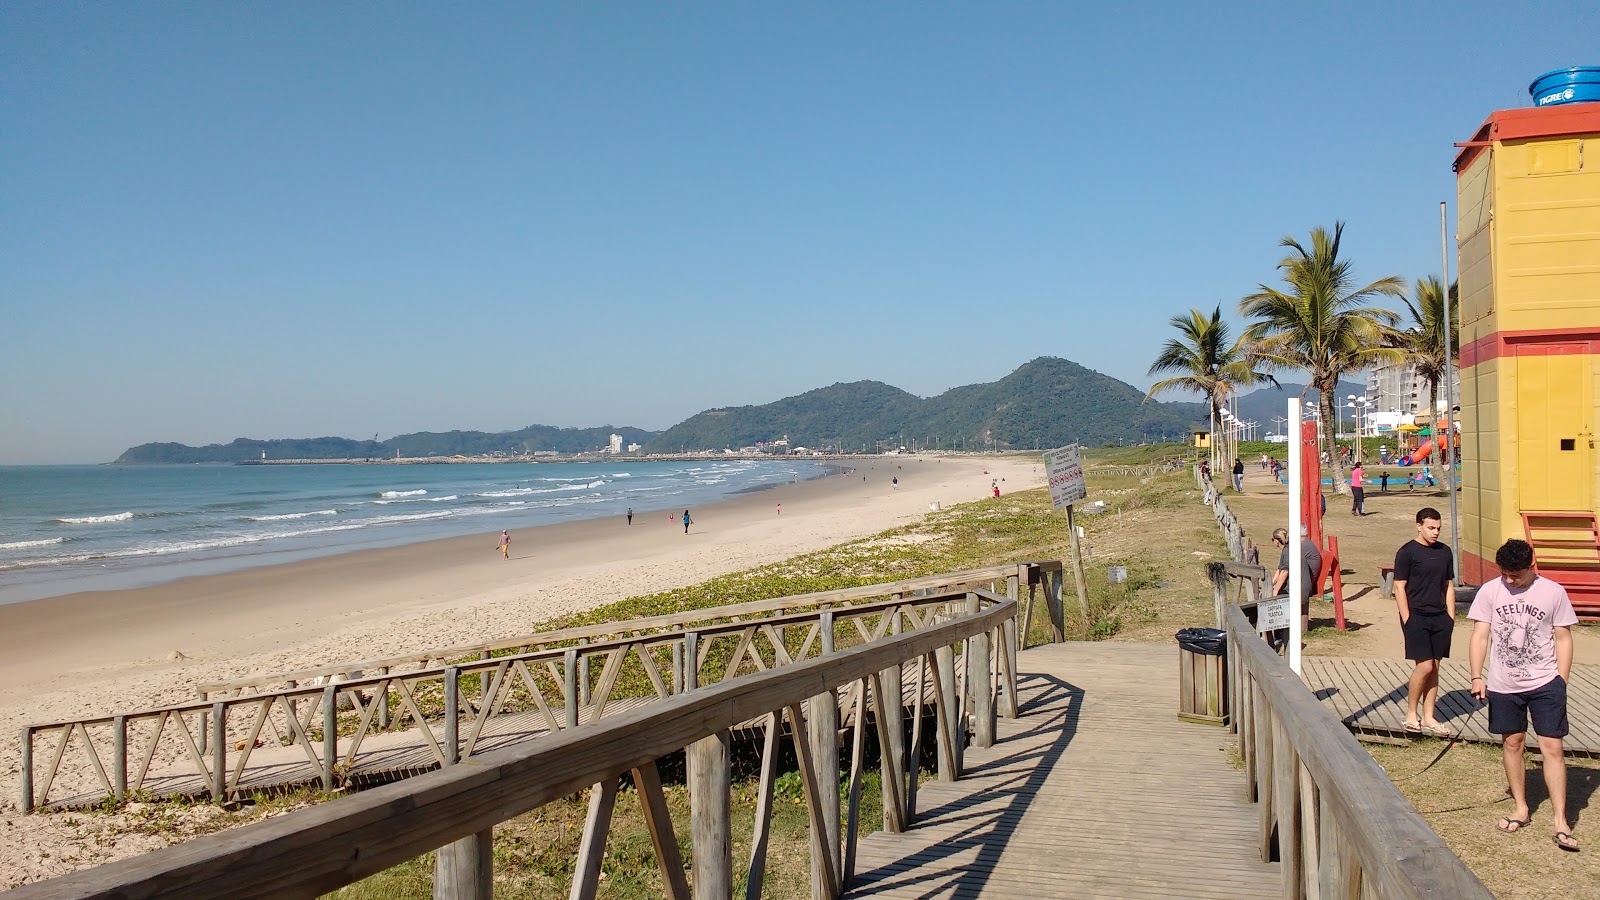 Praia de Navegantes的照片 具有非常干净级别的清洁度